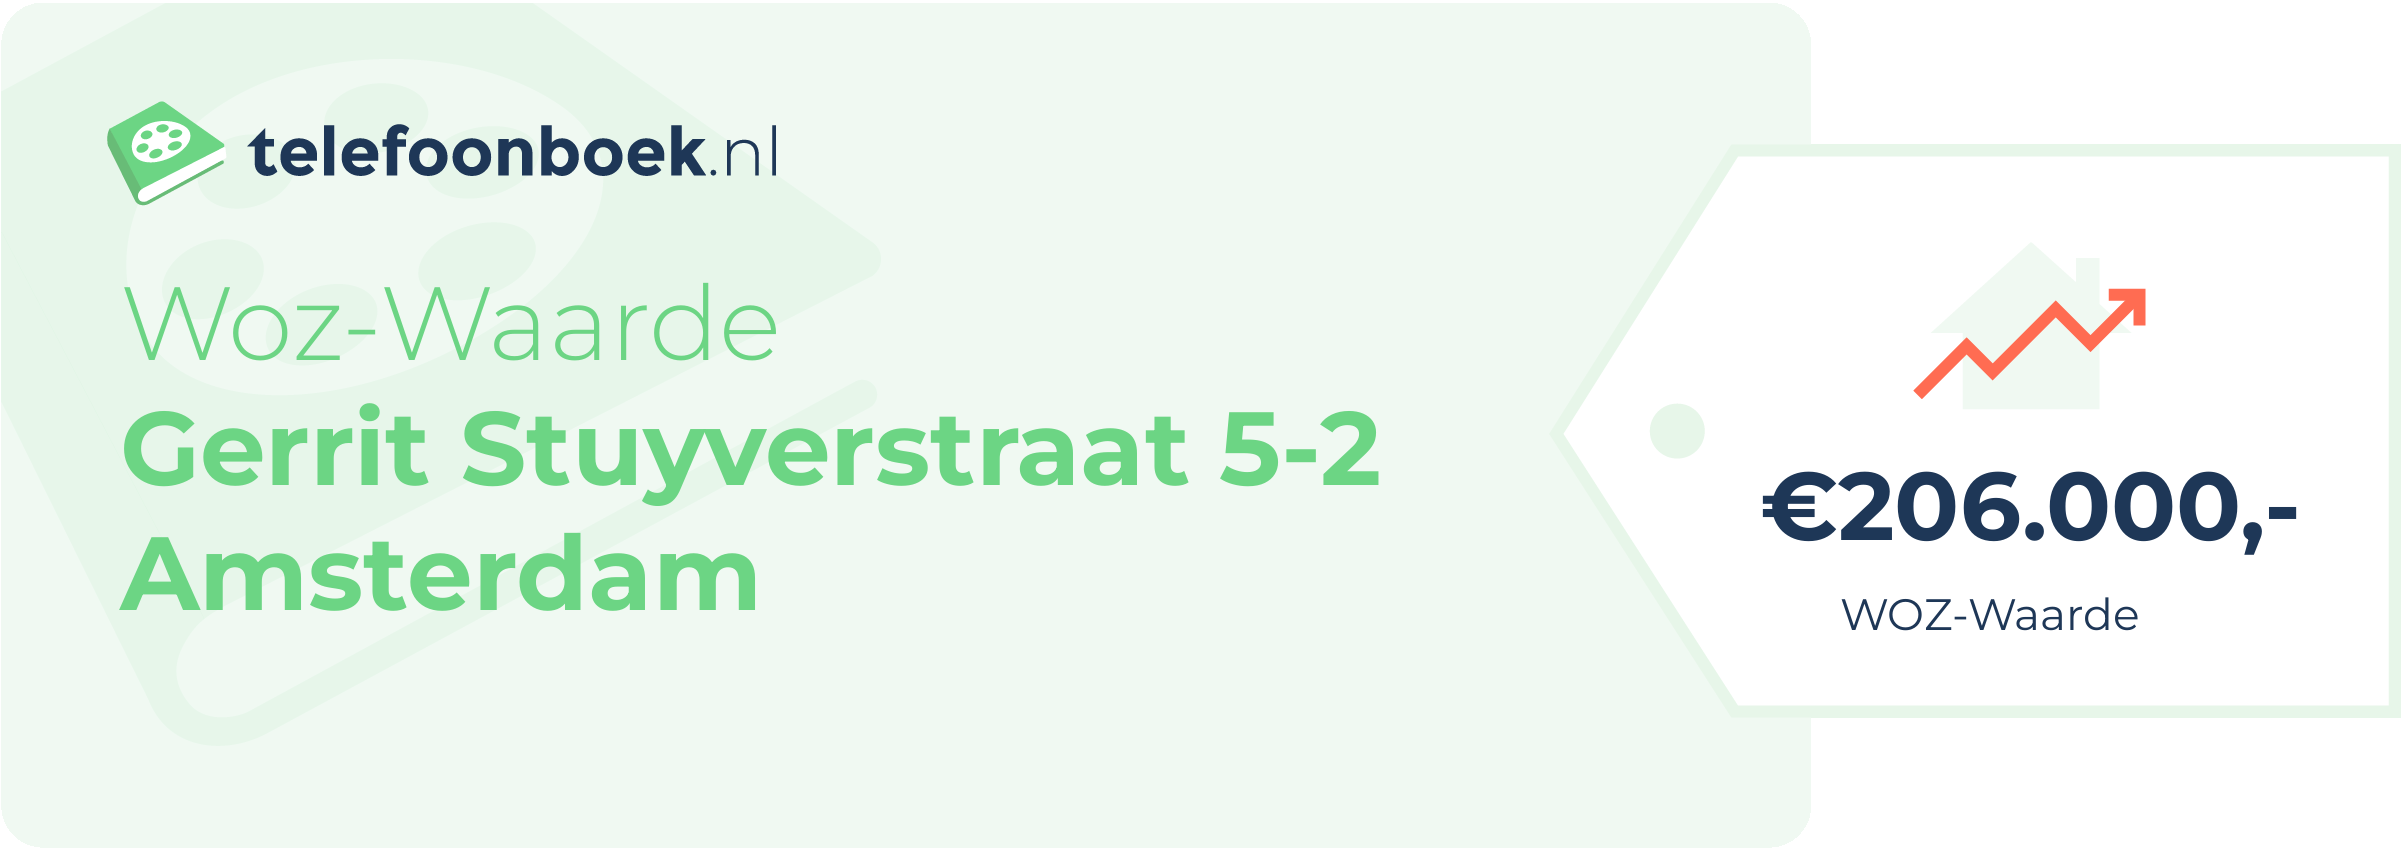 WOZ-waarde Gerrit Stuyverstraat 5-2 Amsterdam